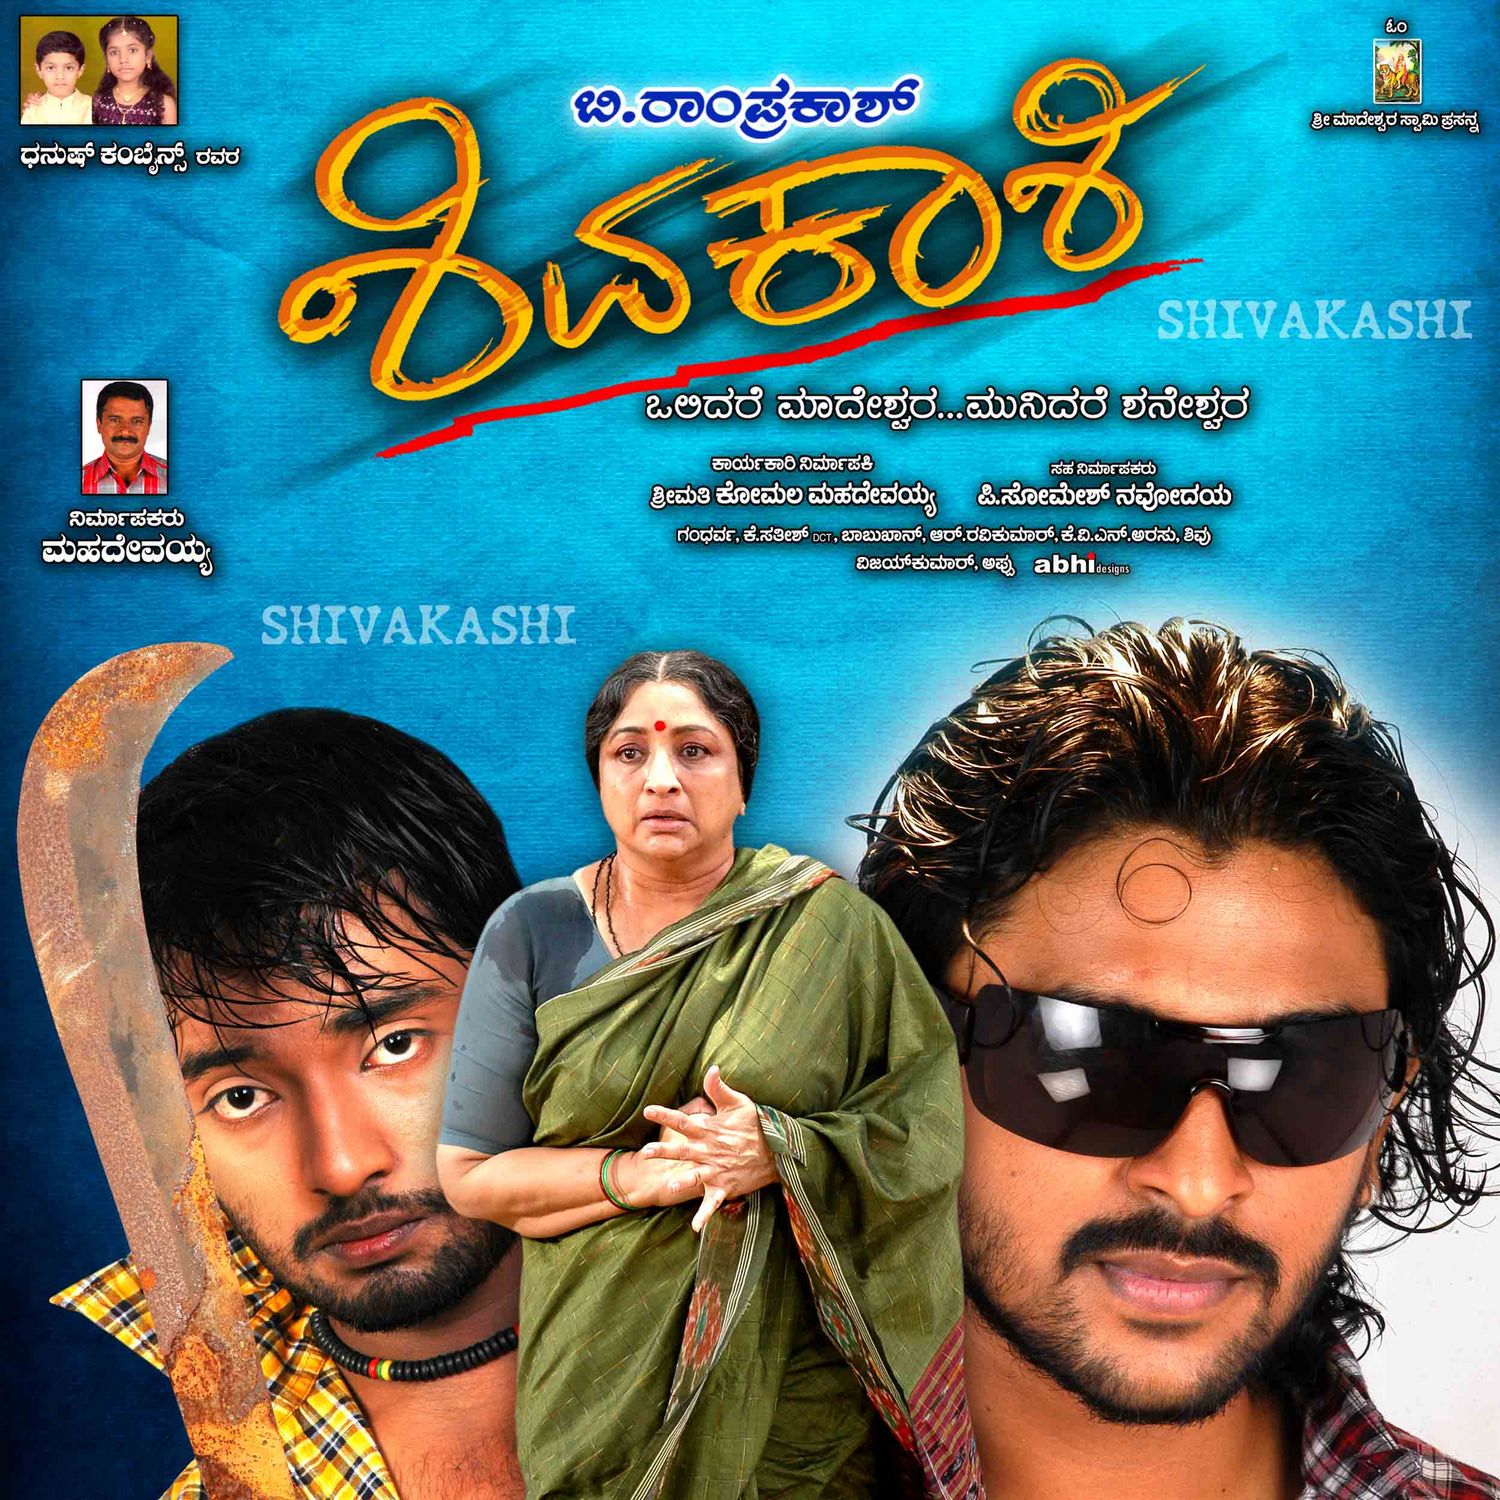 Extra Large Movie Poster Image for Shivakashi (#3 of 13)